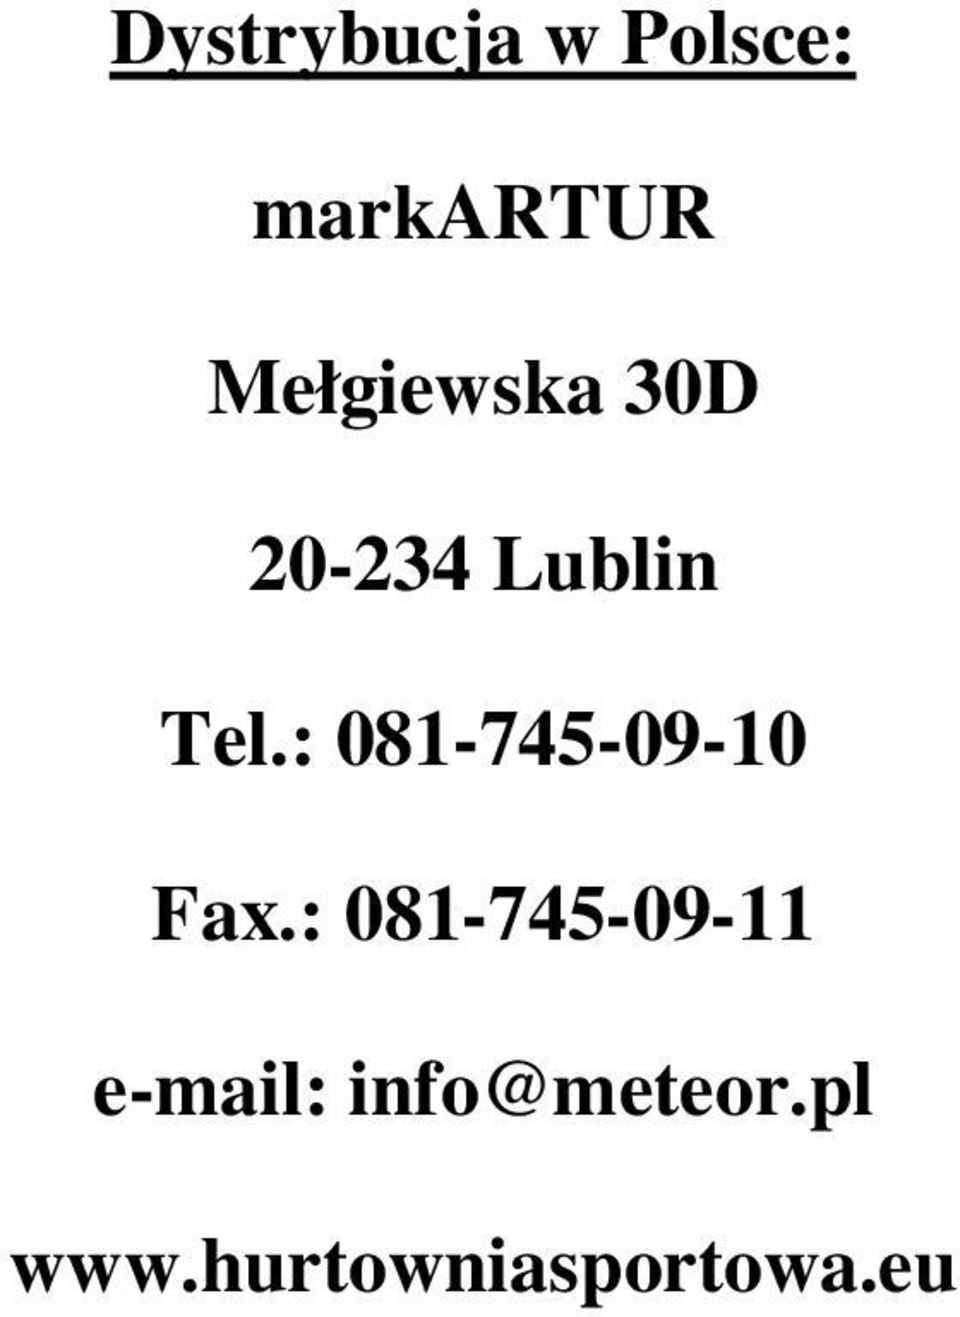 : 081-745-09-10 Fax.